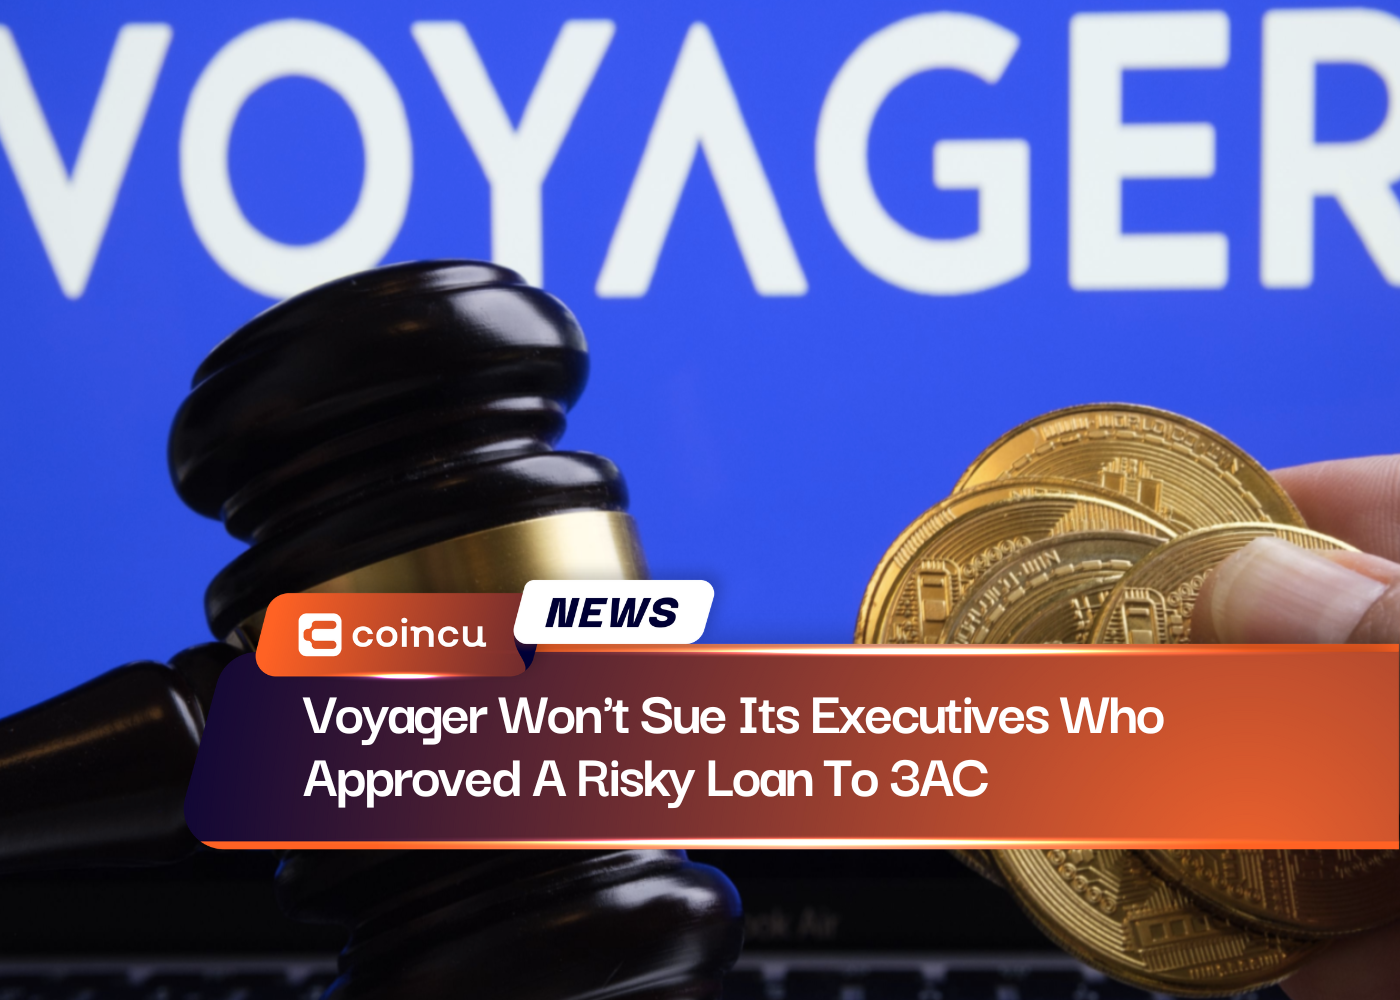 Voyager, 3AC'a Riskli Bir Krediyi Onaylayan Yöneticilerine Dava Açmayacak